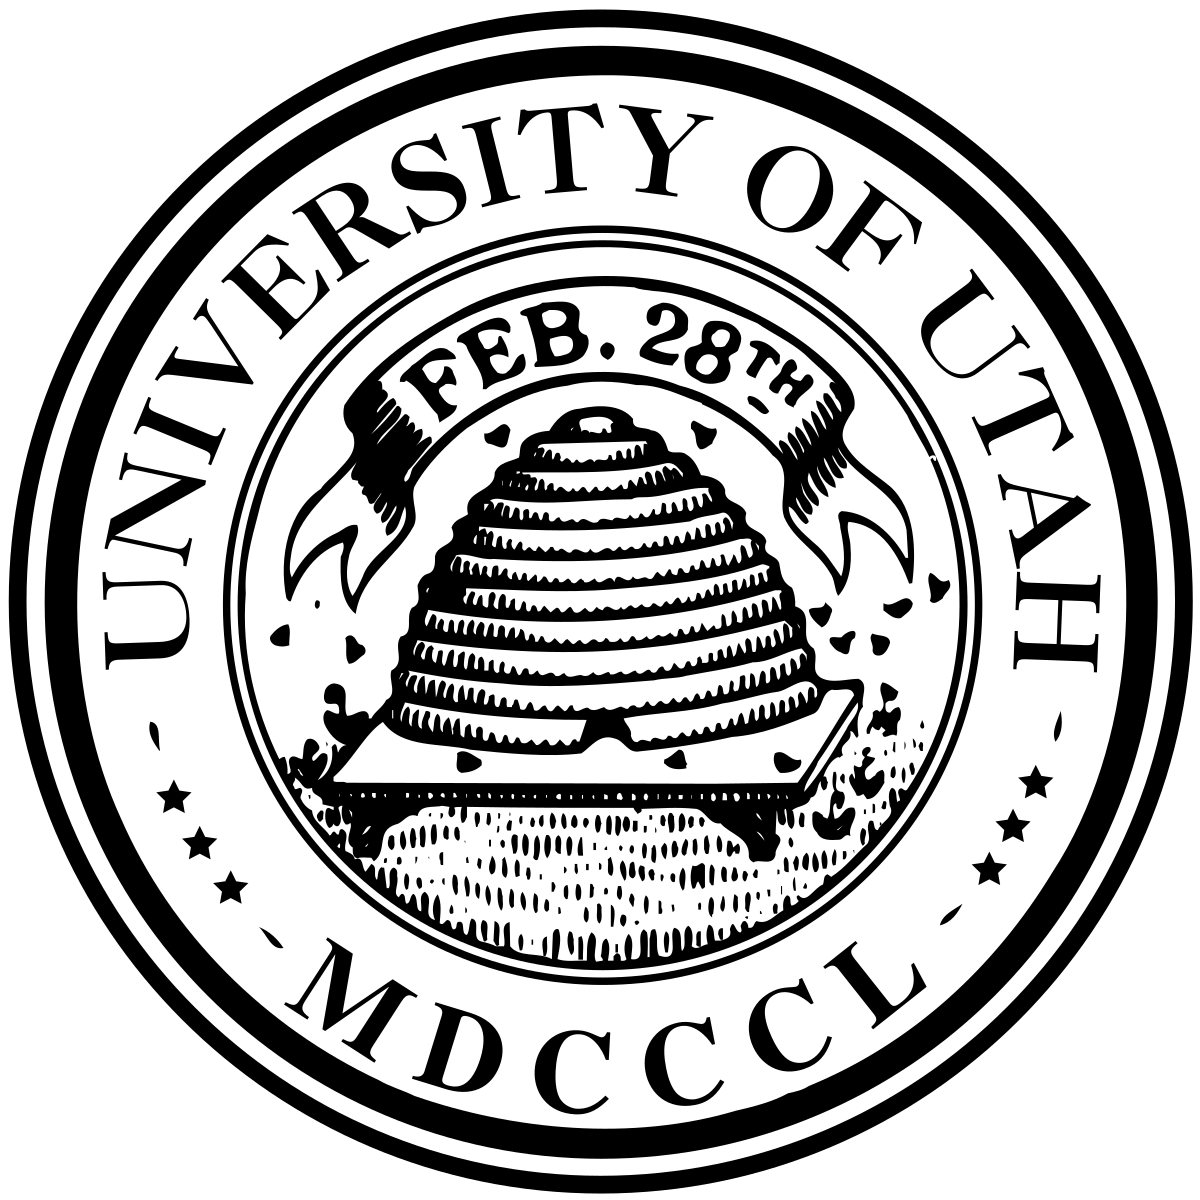 University of Utah Logo - University of Utah